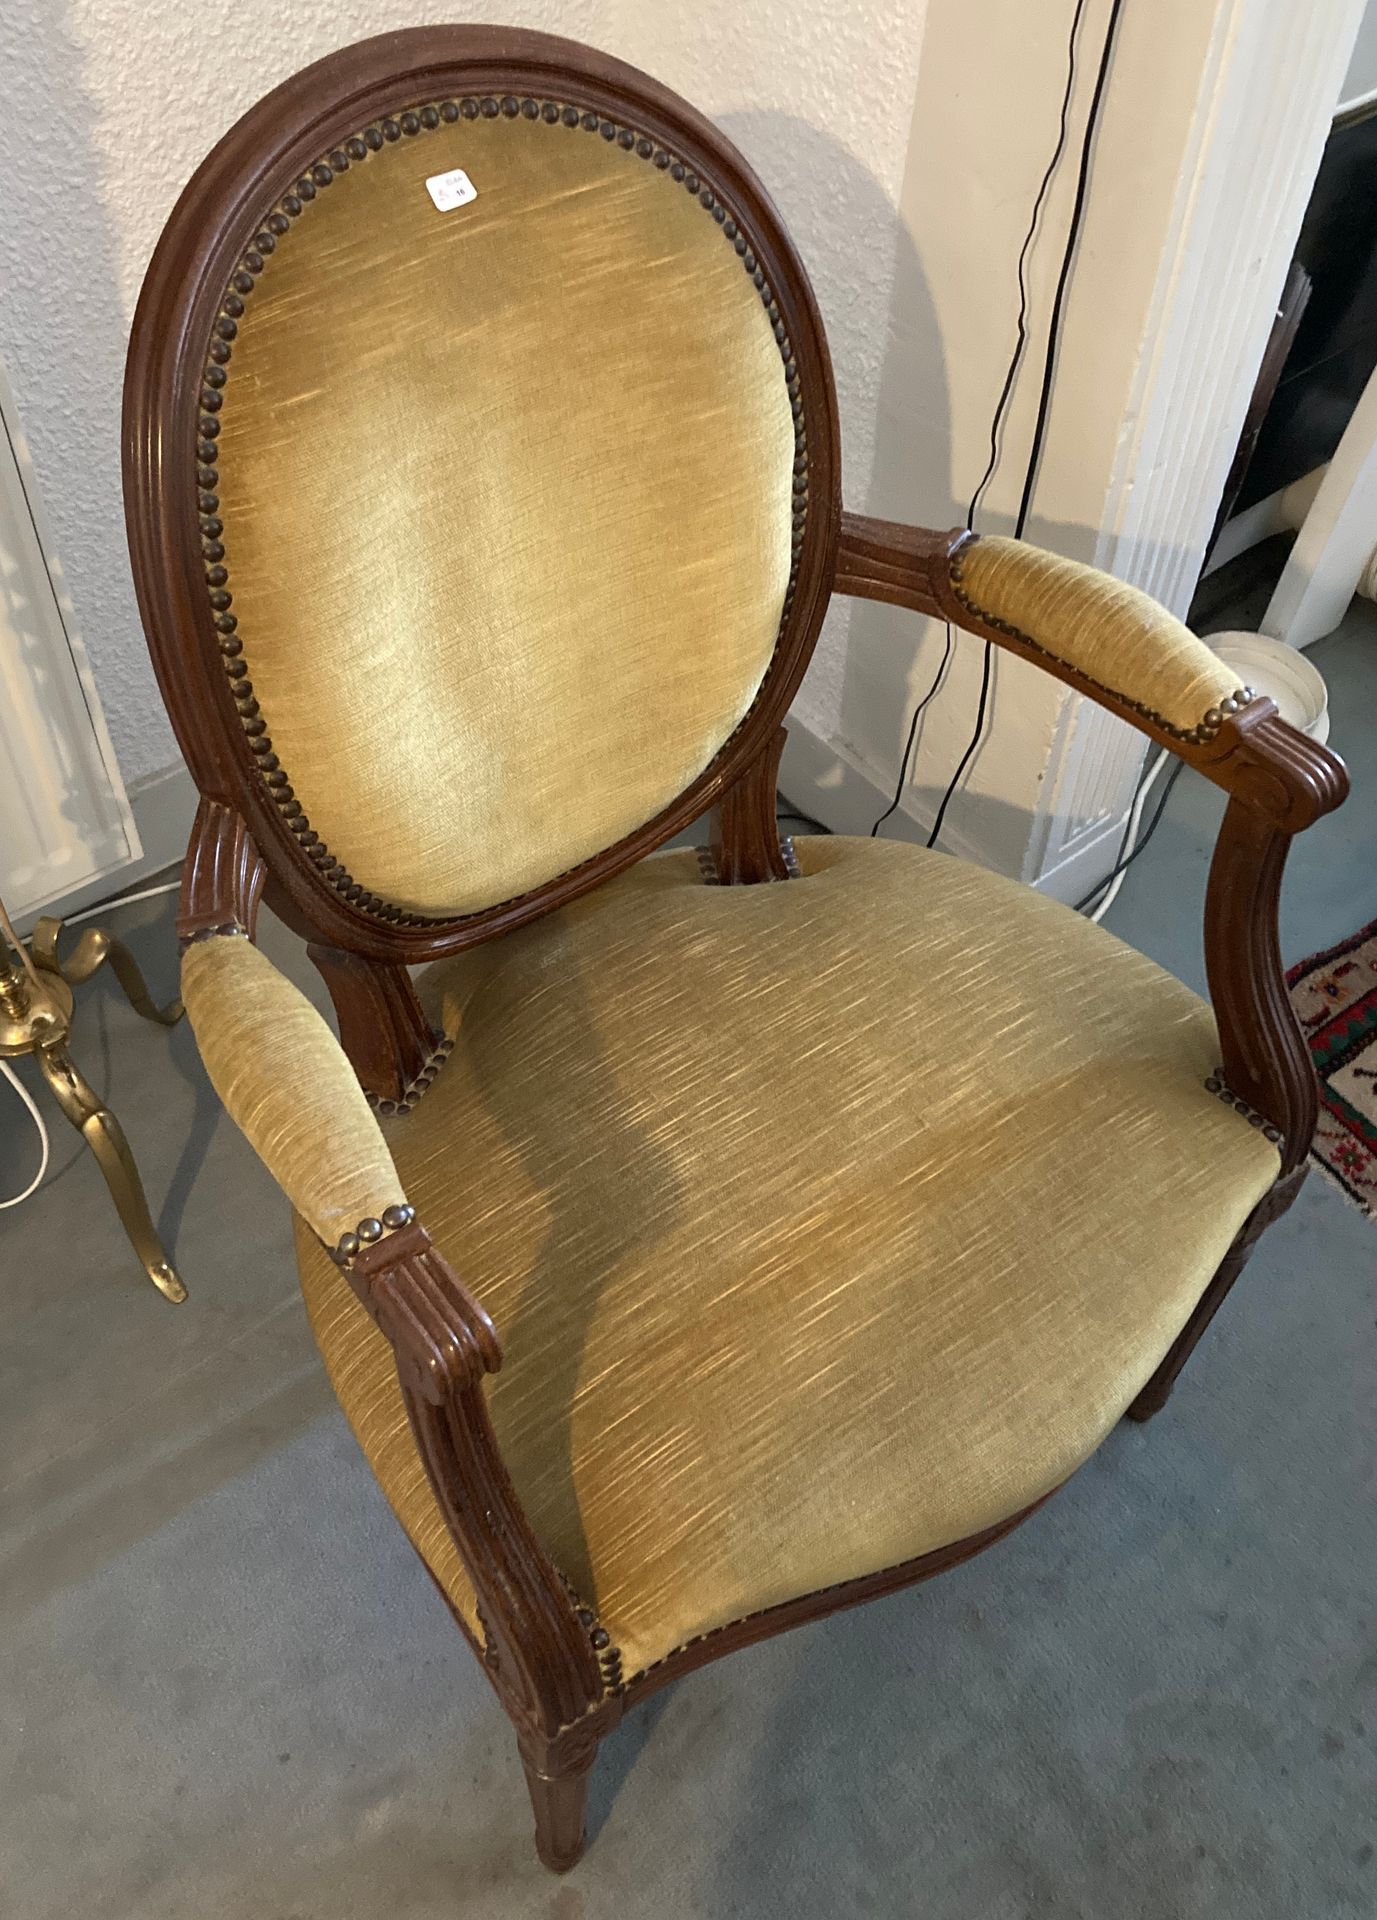 Null 一张路易十六风格的卡布里埃奖章扶手椅。